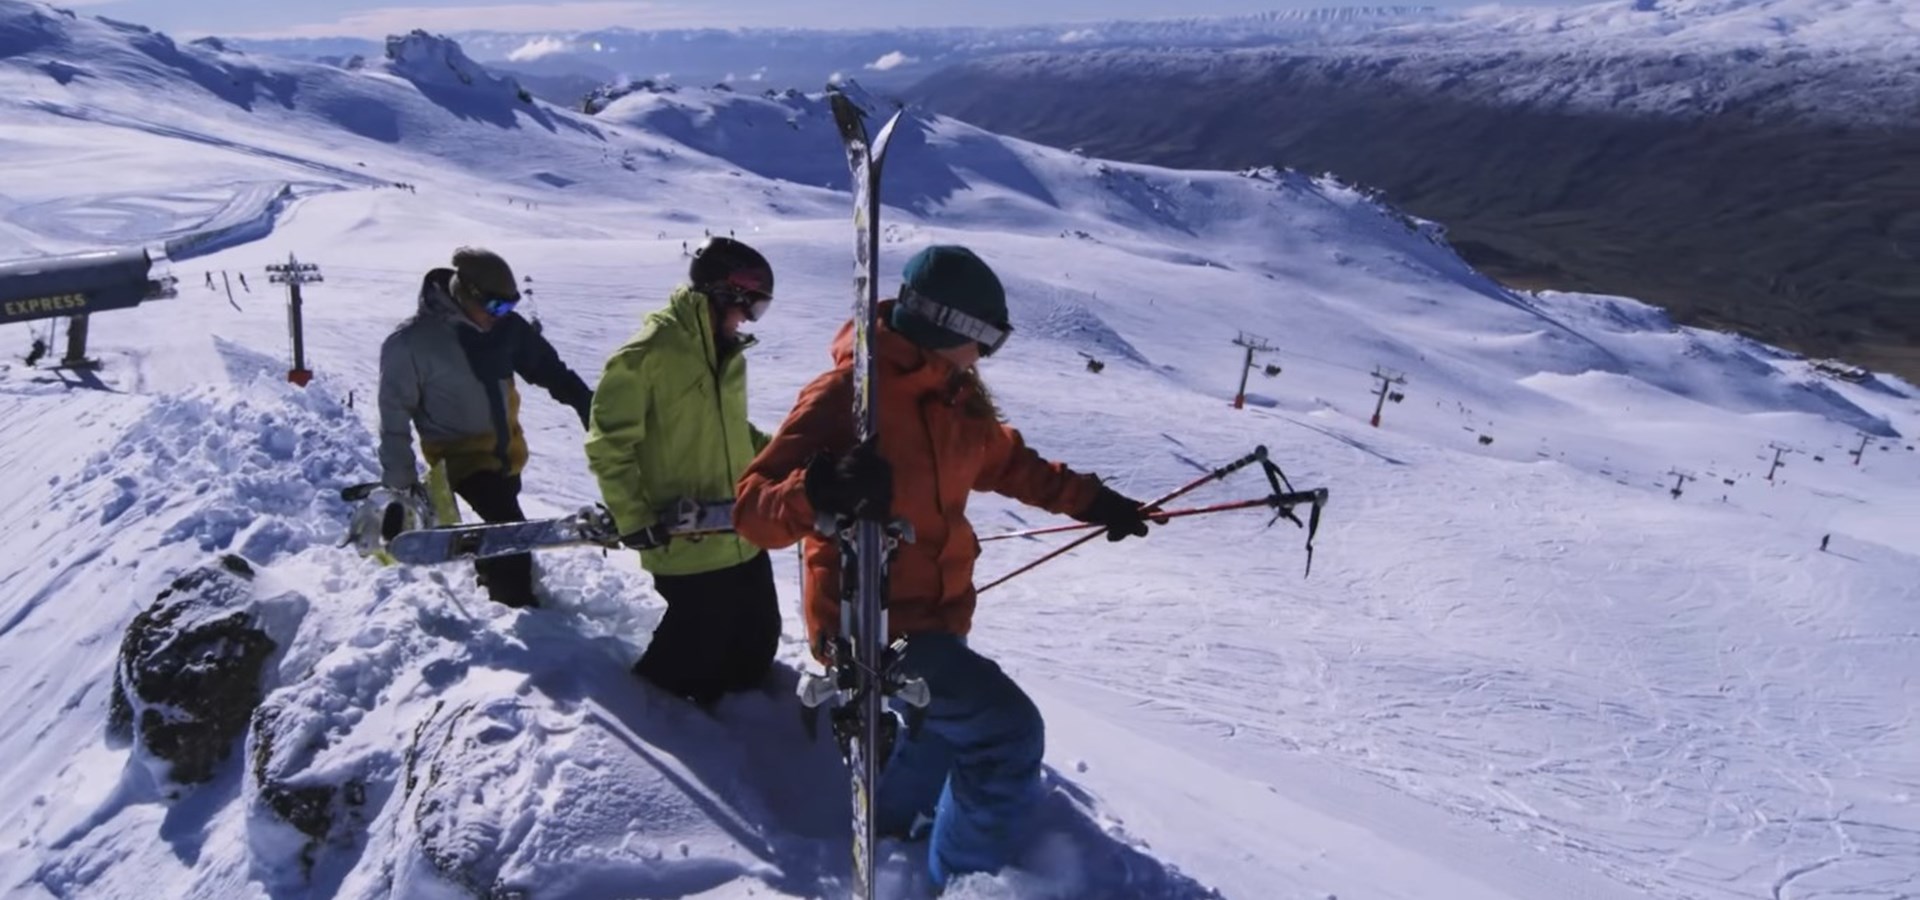 Cardrona - Ski fields in Queenstown - Basin - learn to ski